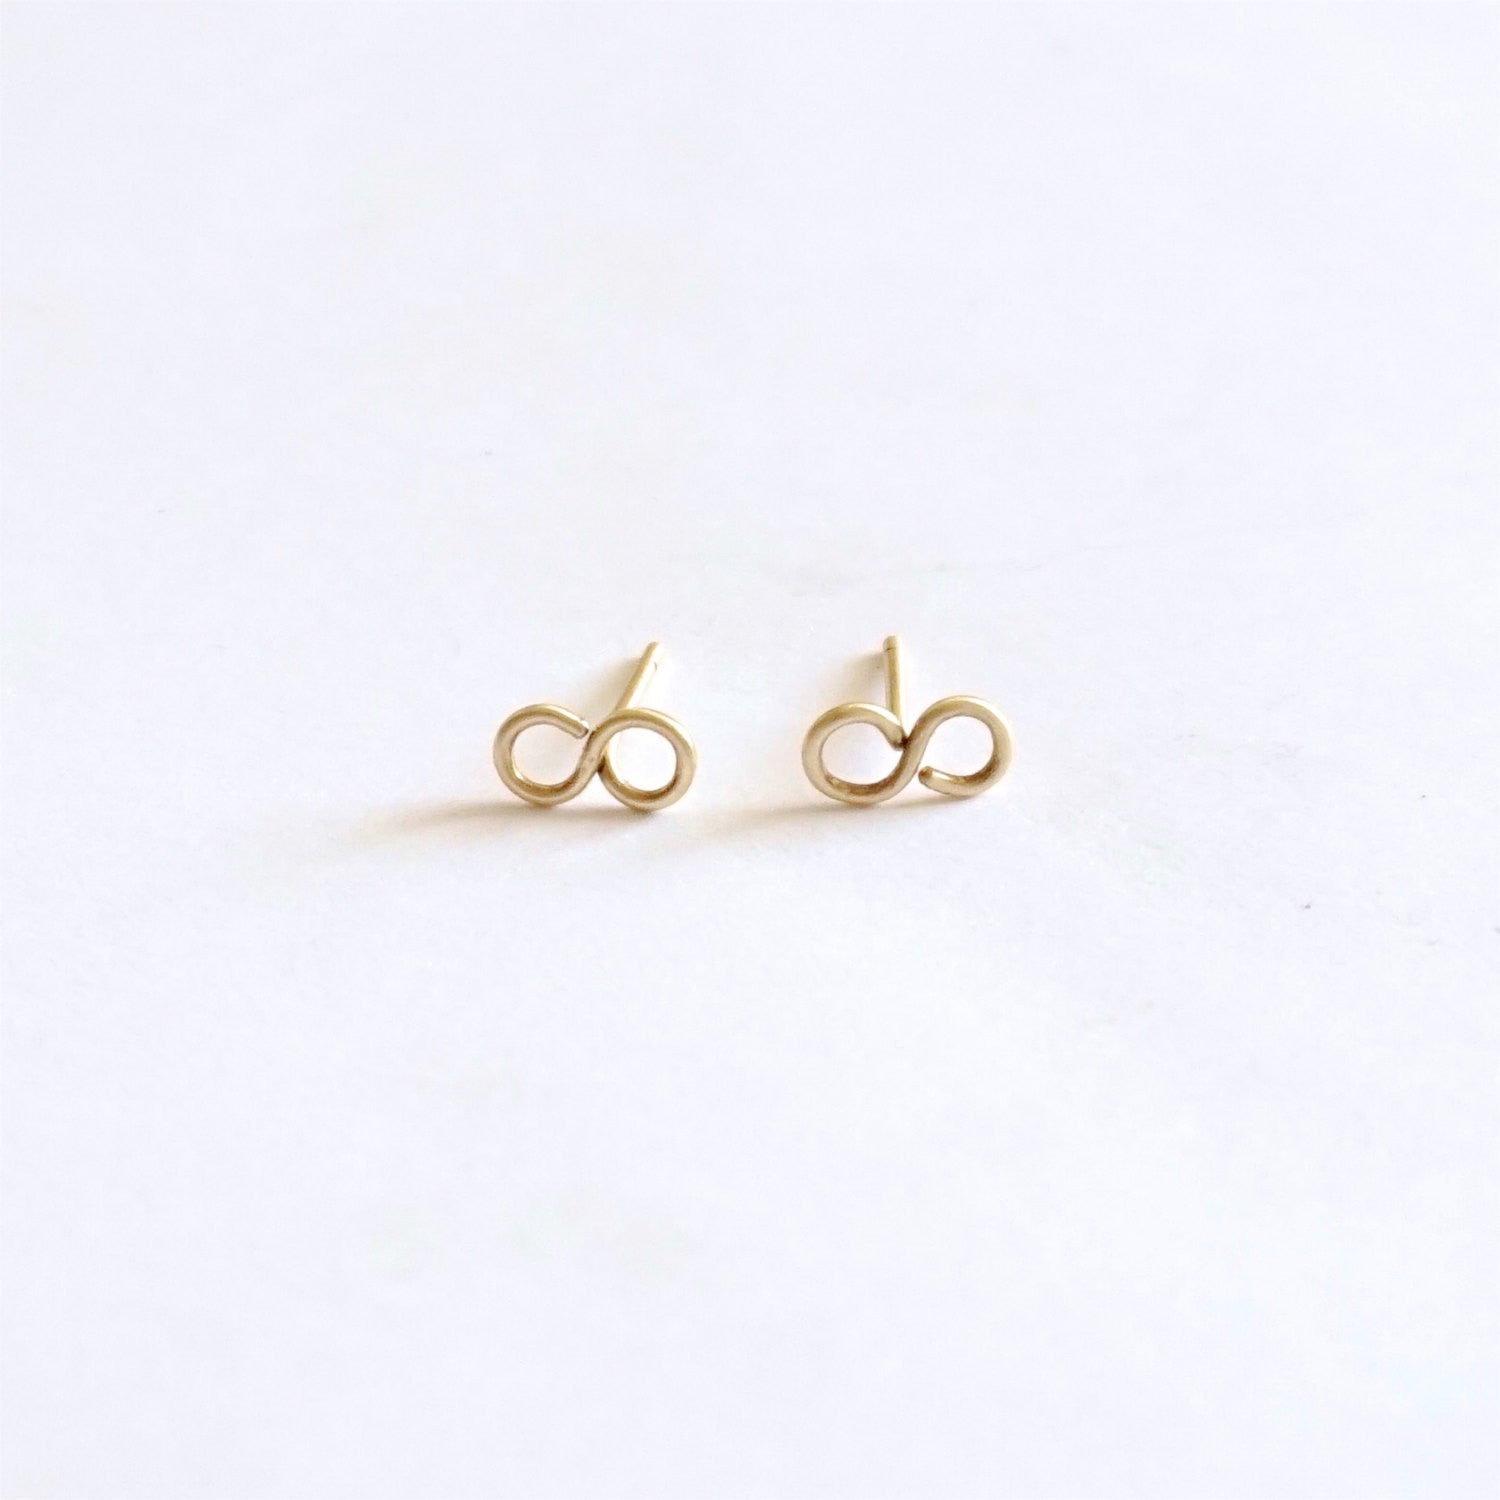 Buy Unique Yellow Gold Earrings Online | ORRA